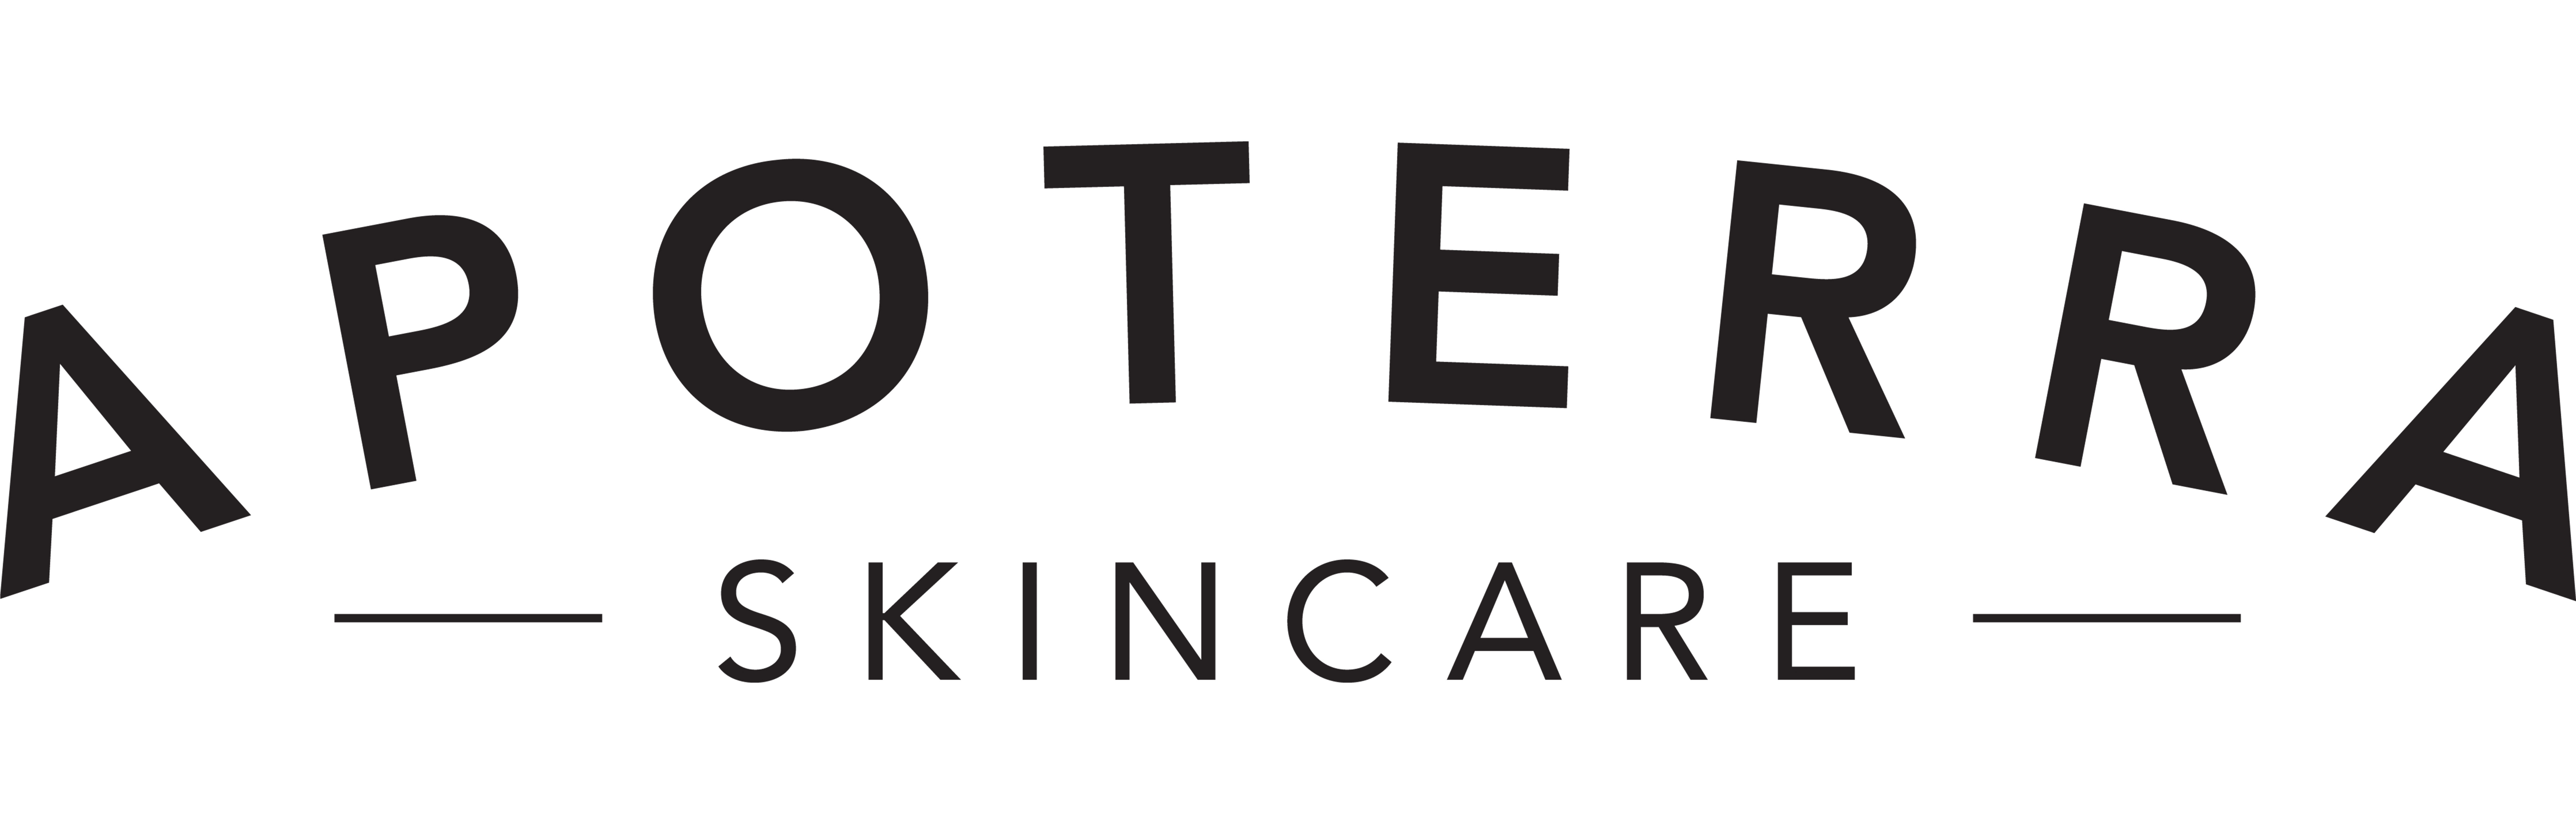 Apoterra Skincare_logo